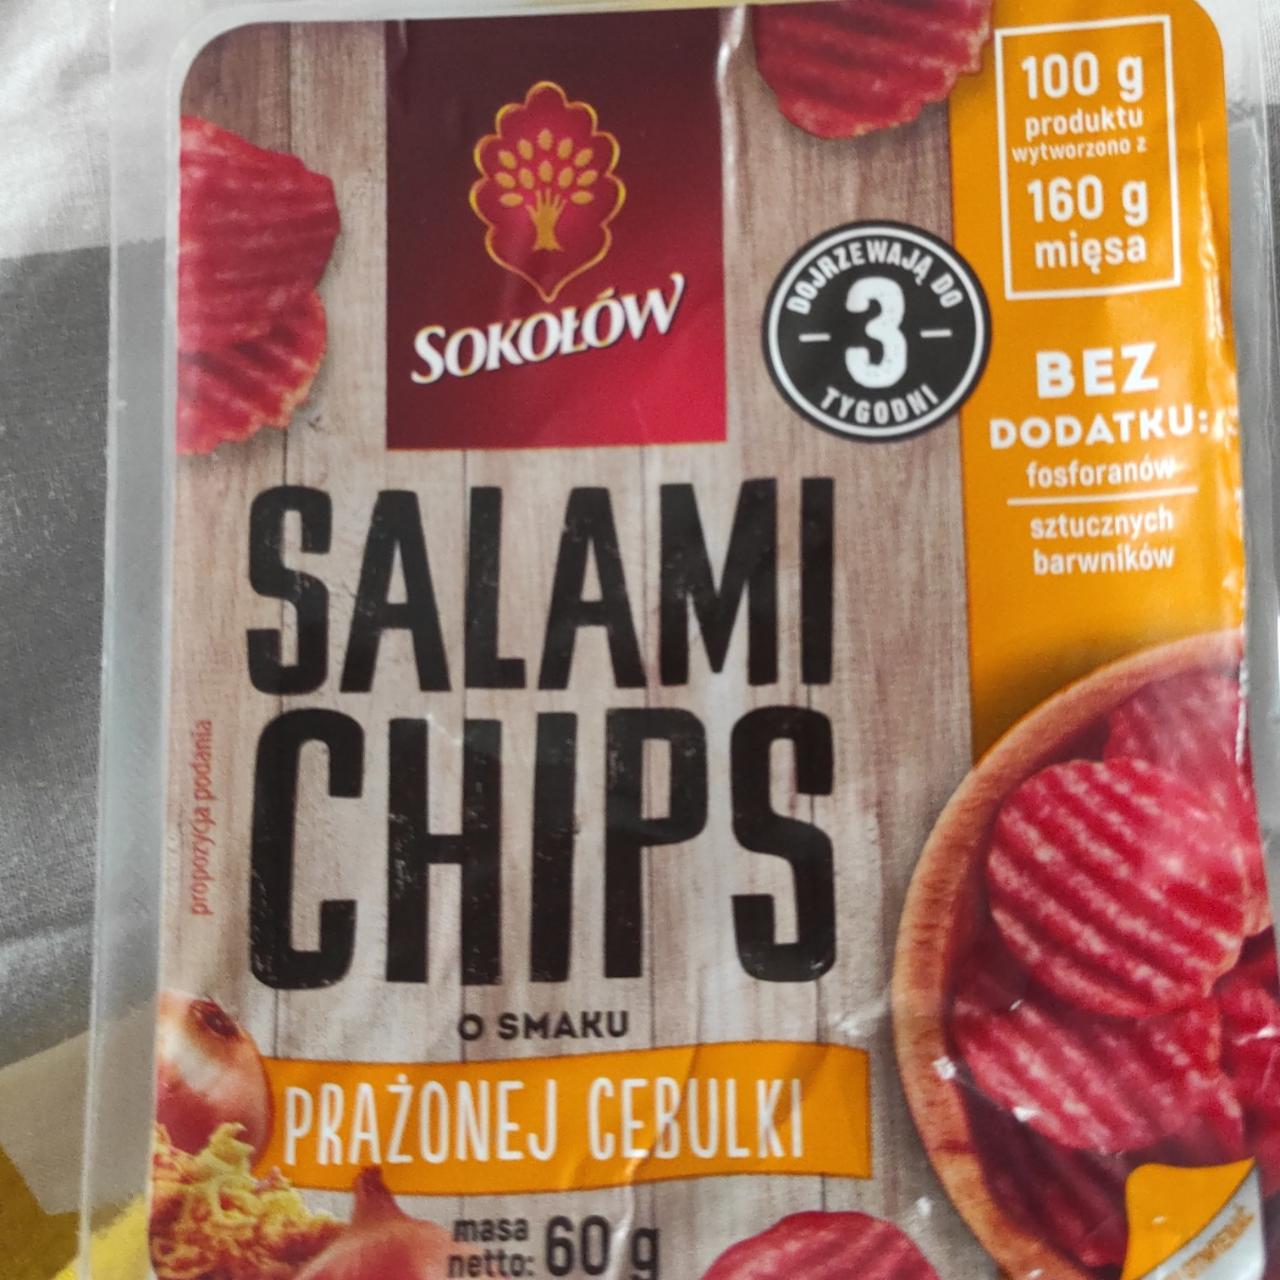 Zdjęcia - Salami chips o smaku prażonej cebulki Sokołów